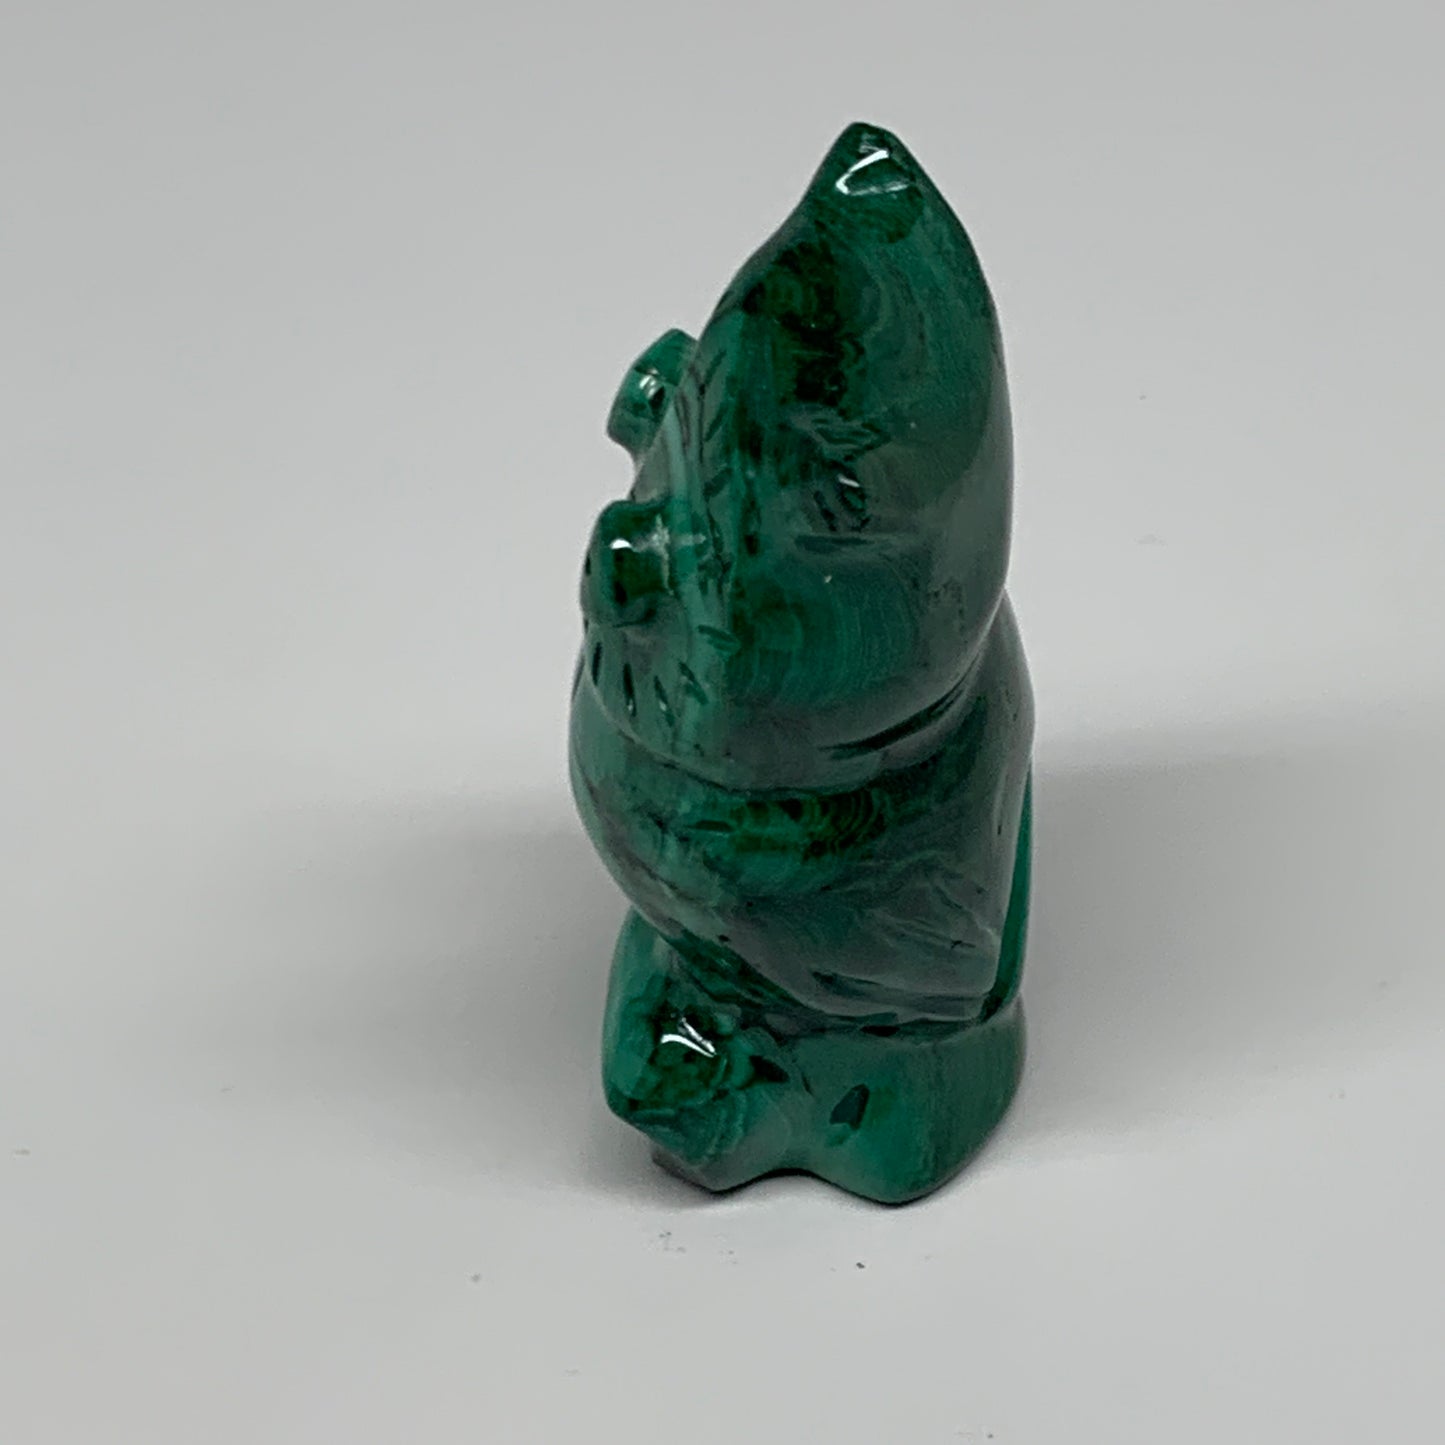 118.6g, 2.5"x1.4"x1.1" Natural Solid Malachite Penguin Figurine @Congo, B32753